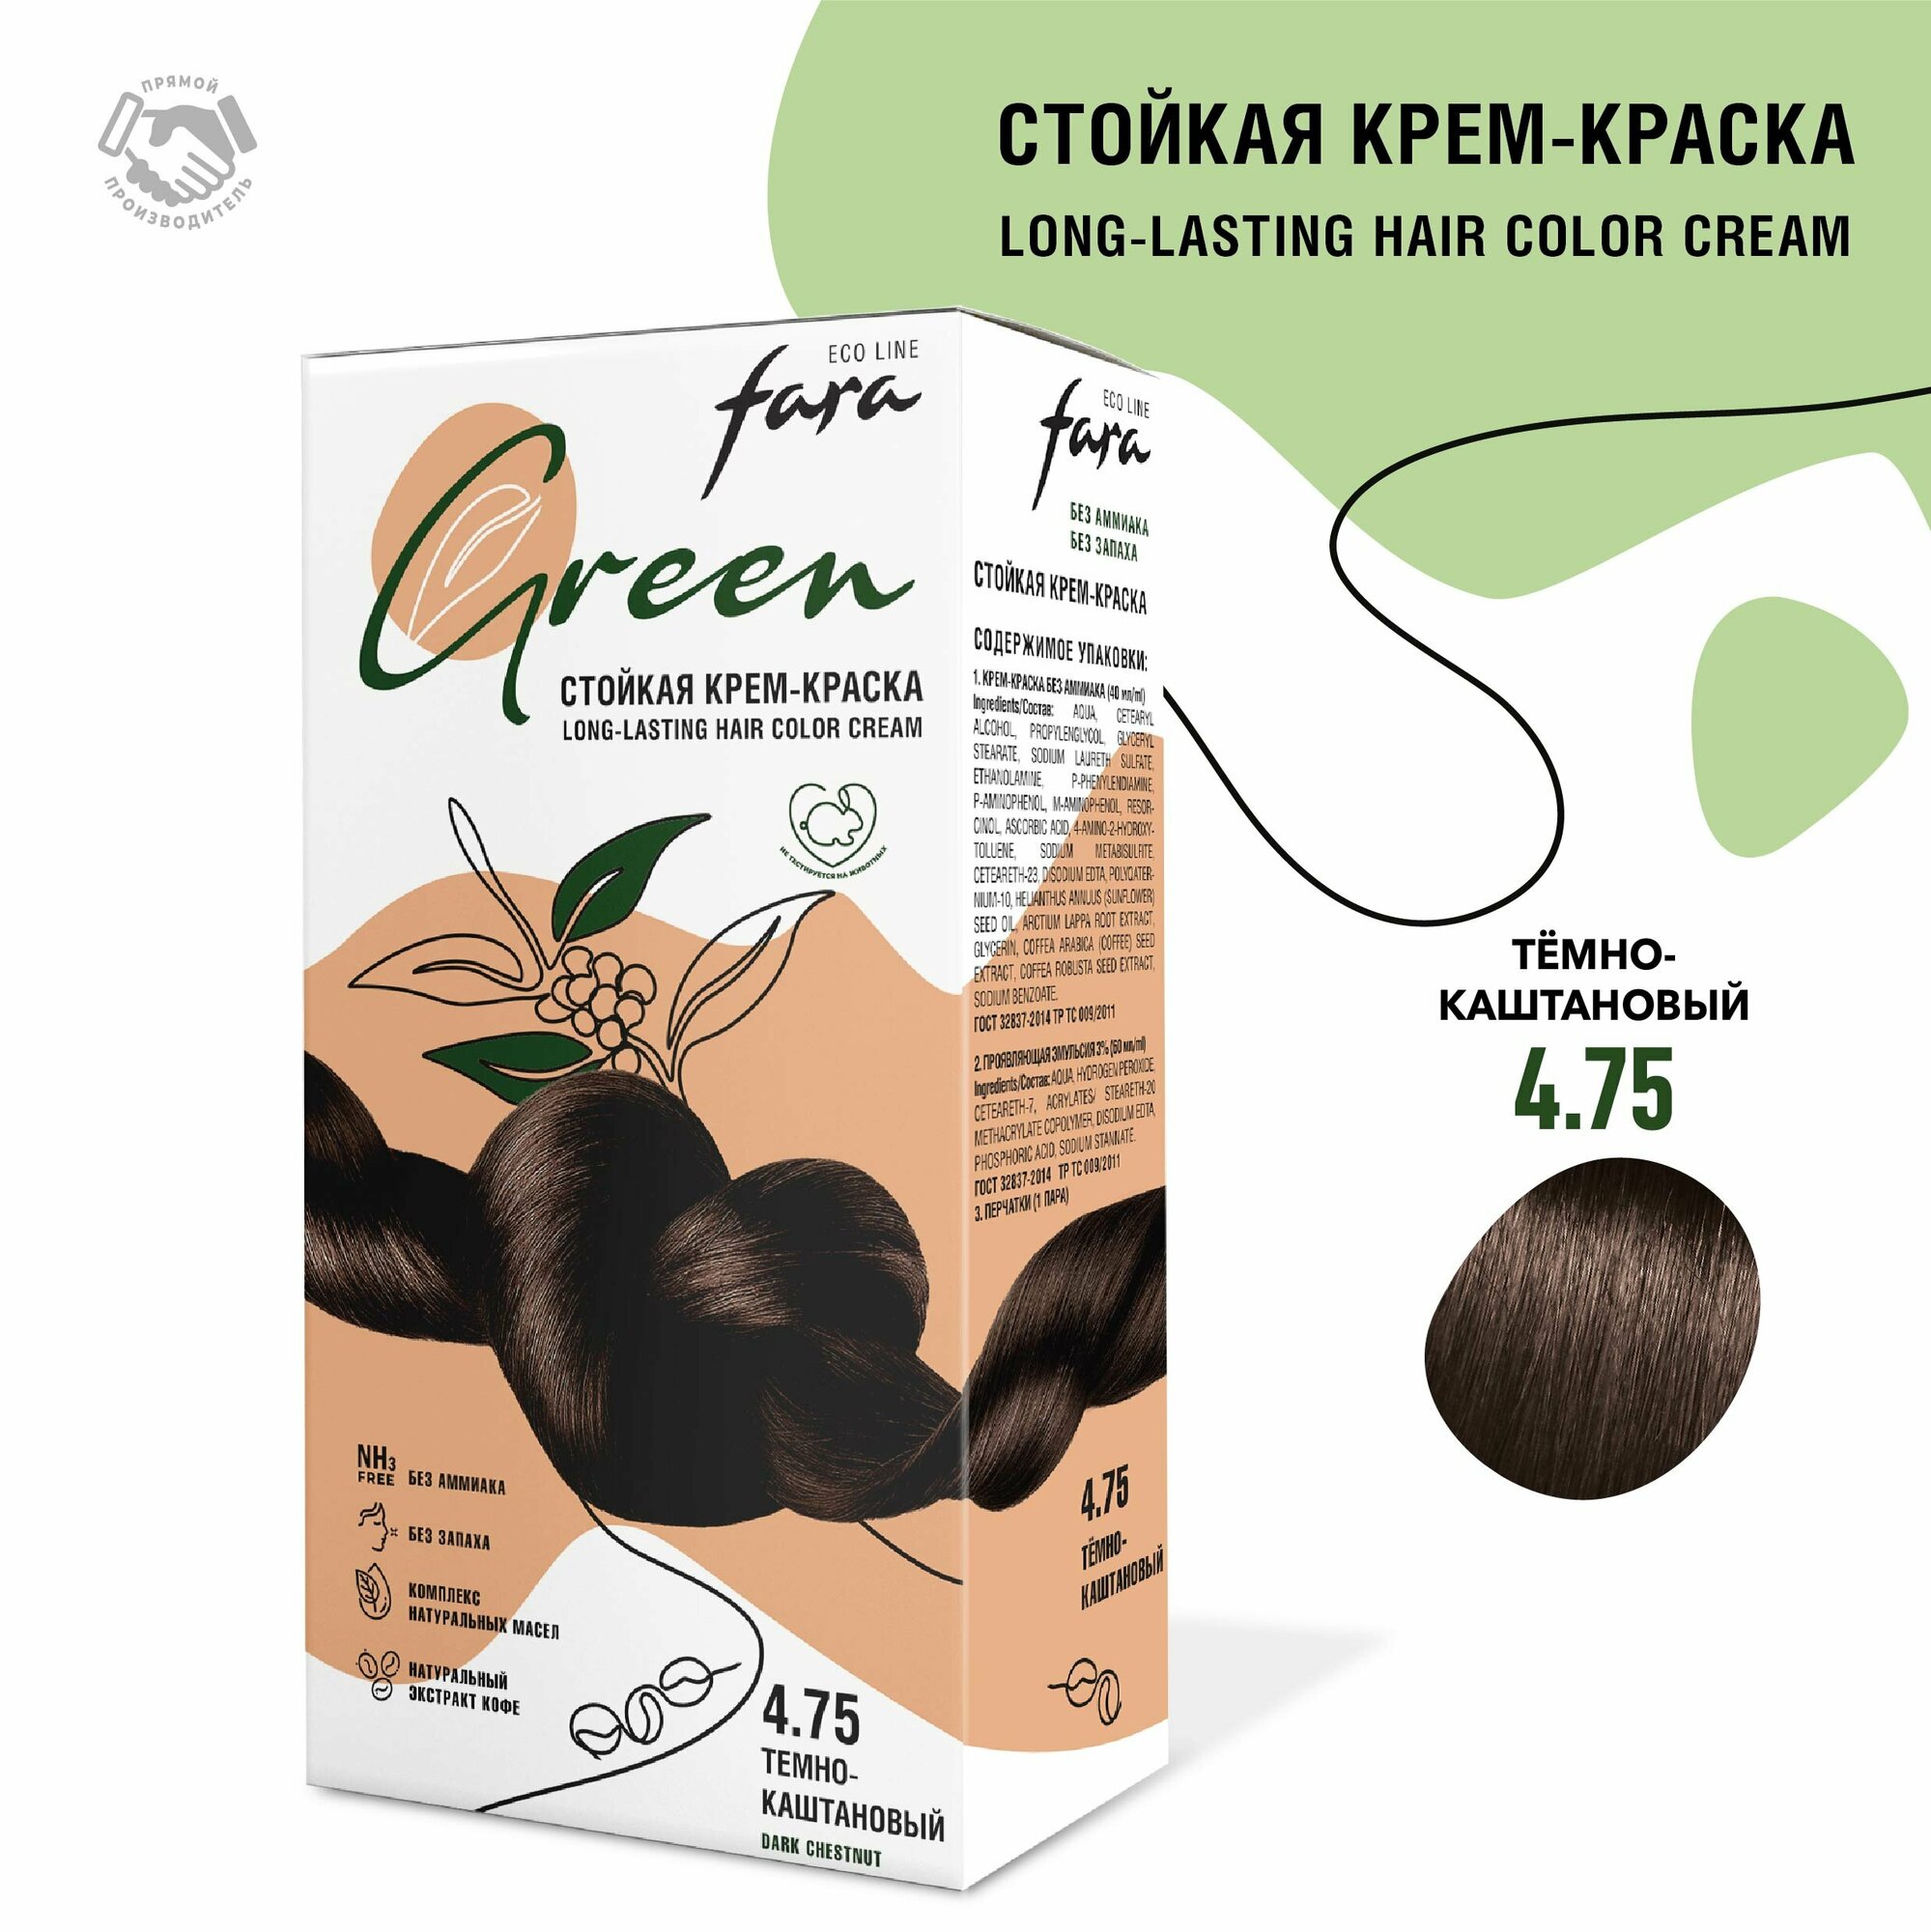 Стойкая крем-краска для волос Fara Eco Line Green 4.75 – темно-каштановый